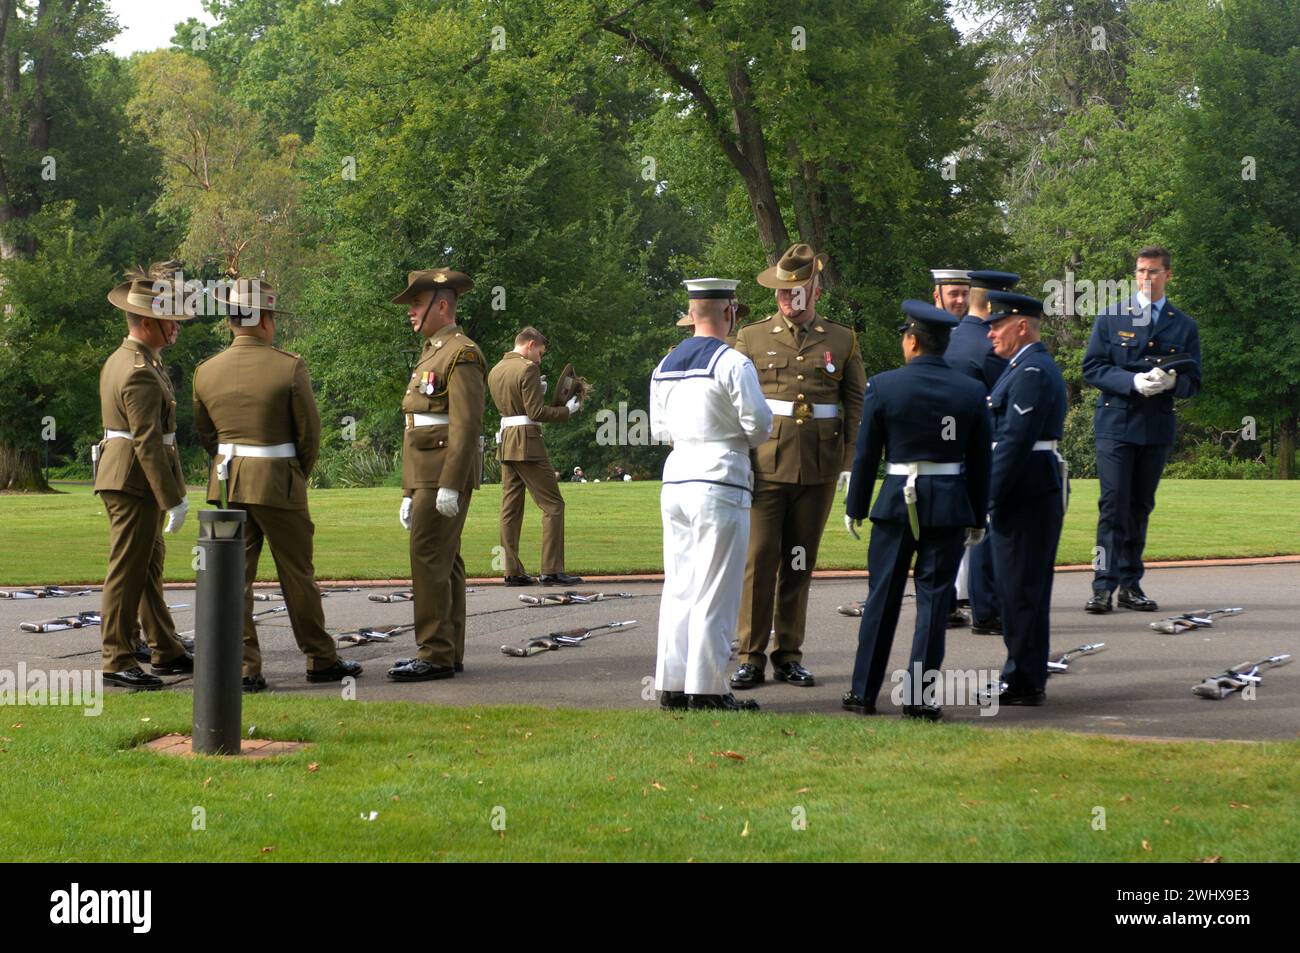 Guardia armada del Sr. Pierre-André Imbert, Embajador de Francia, para presentar sus cartas de crédito en la Casa de Gobierno, Canberra, ACT, Australia. Foto de stock